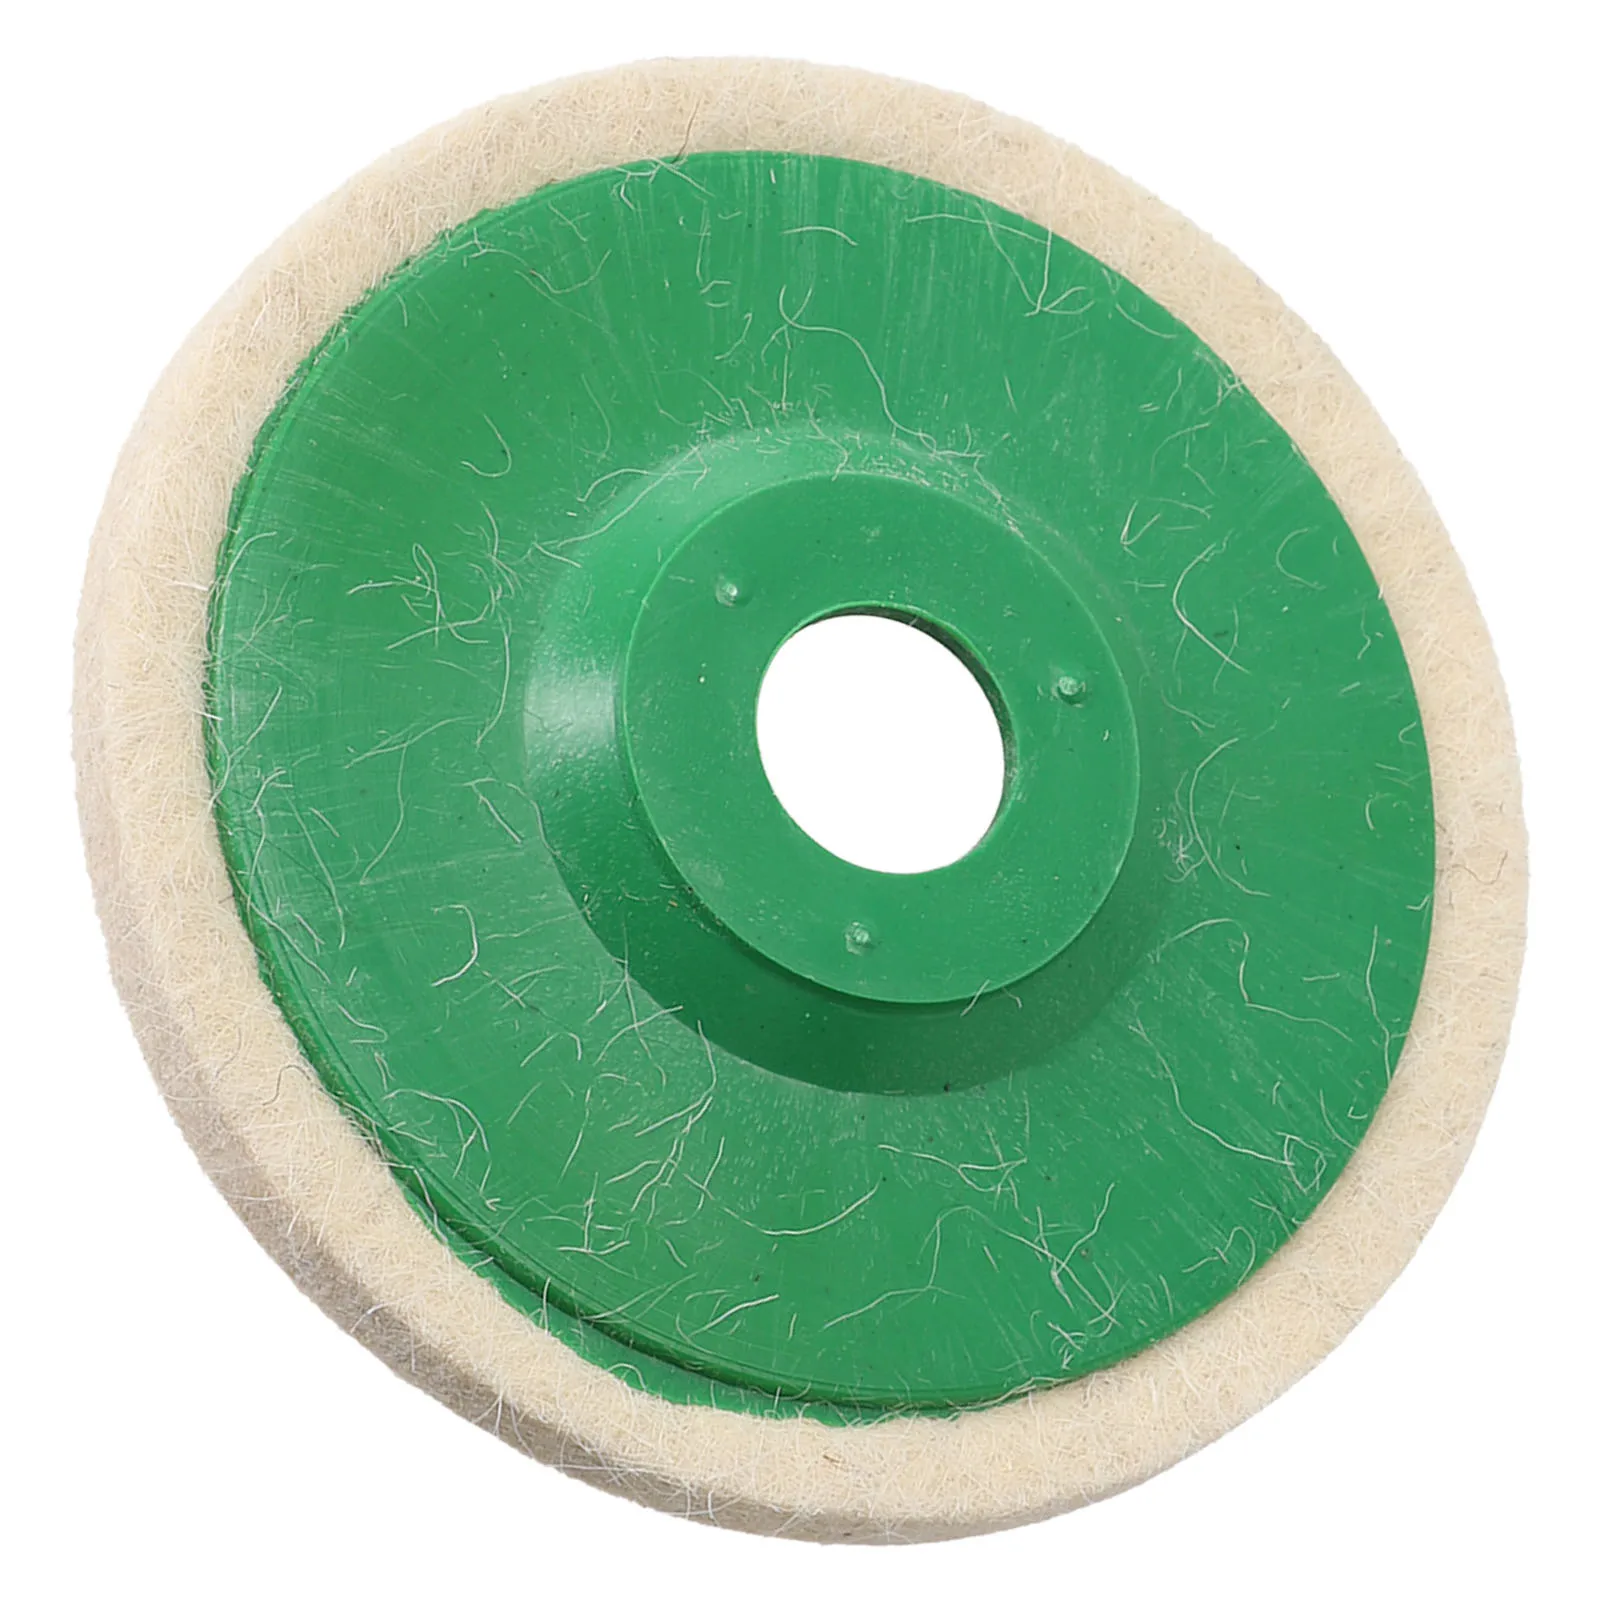 

Полировальная Накладка для инструмента, Высококачественная шерстяная полировальная накладка 125 мм, 1 шт., 5 дюймов, полировальный зеленый шлифовальный круг, абразивный новый бренд